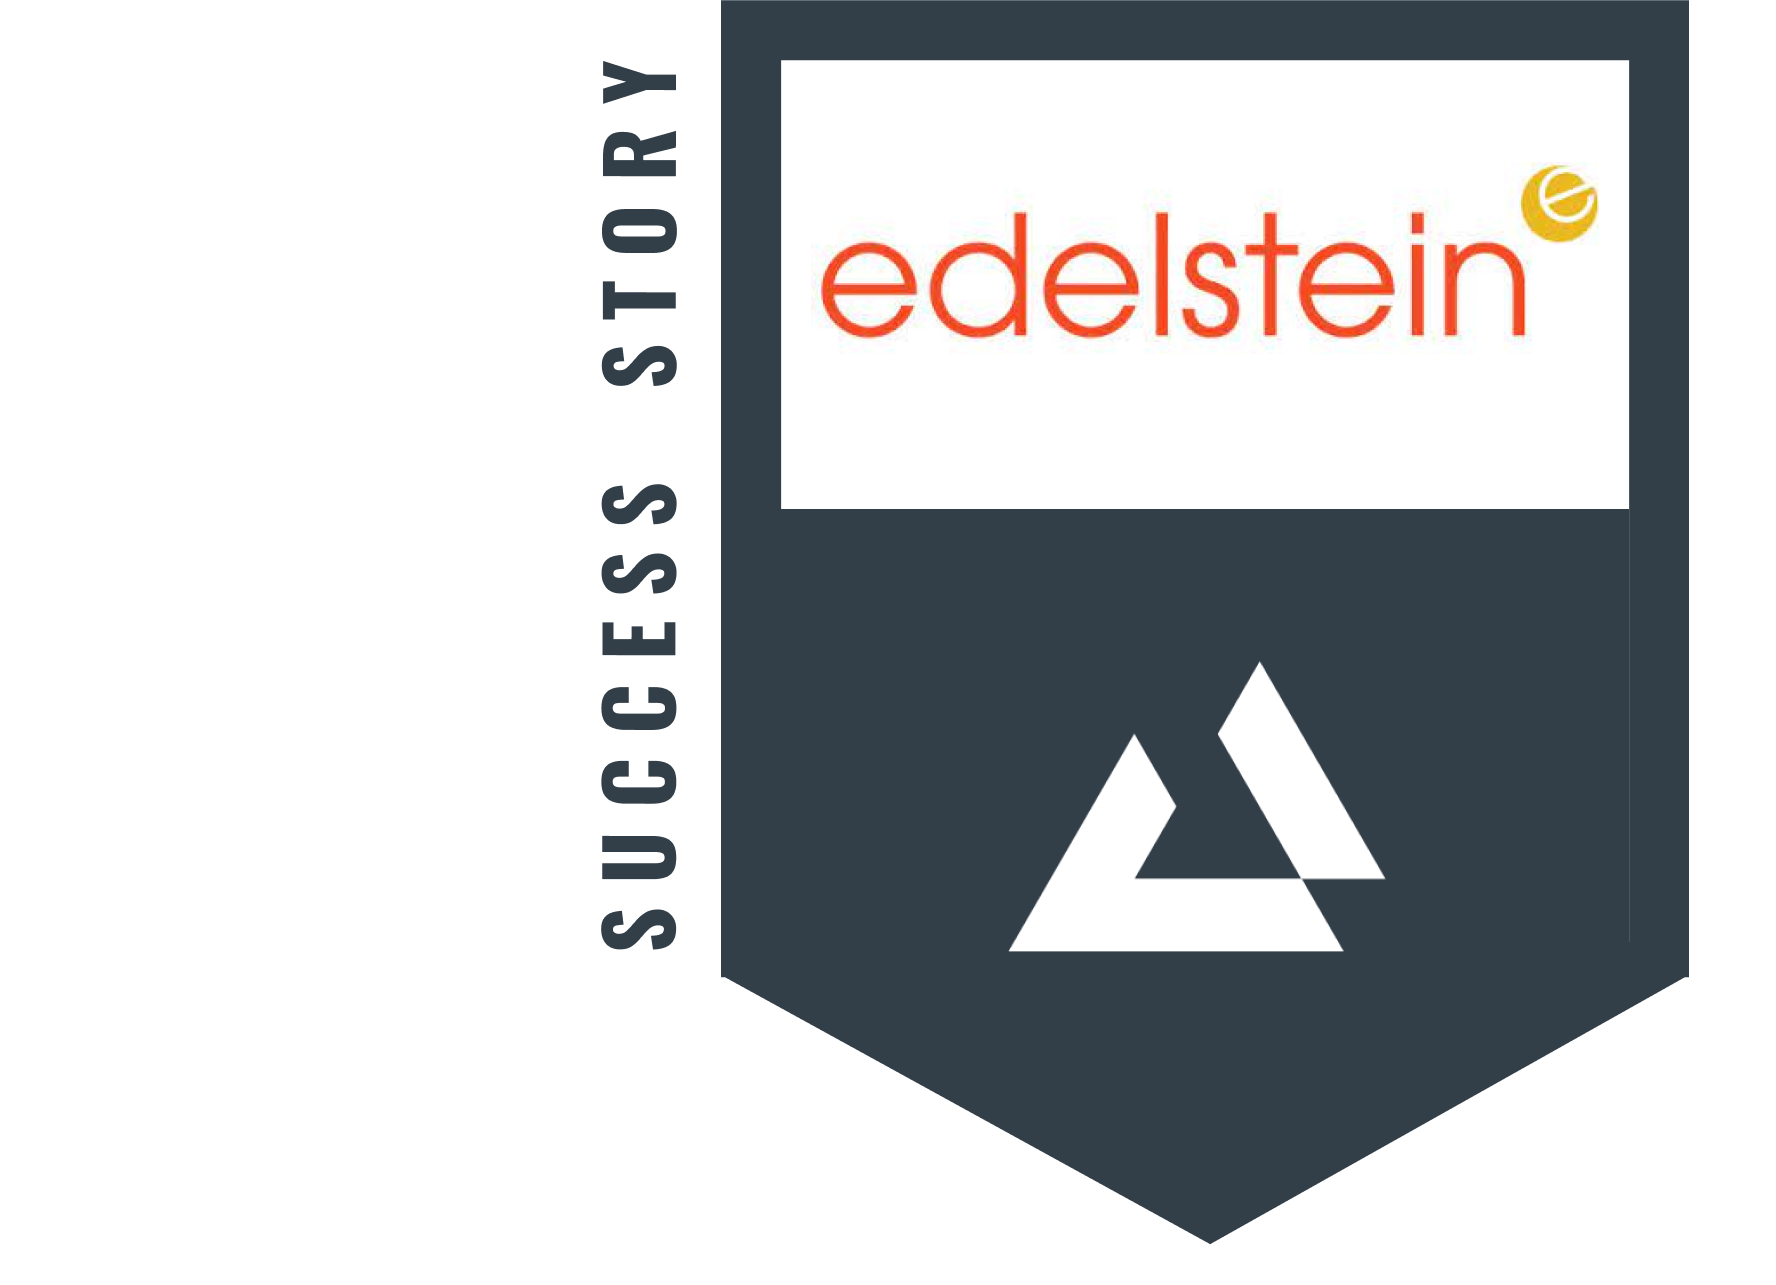 Edelstein & Co